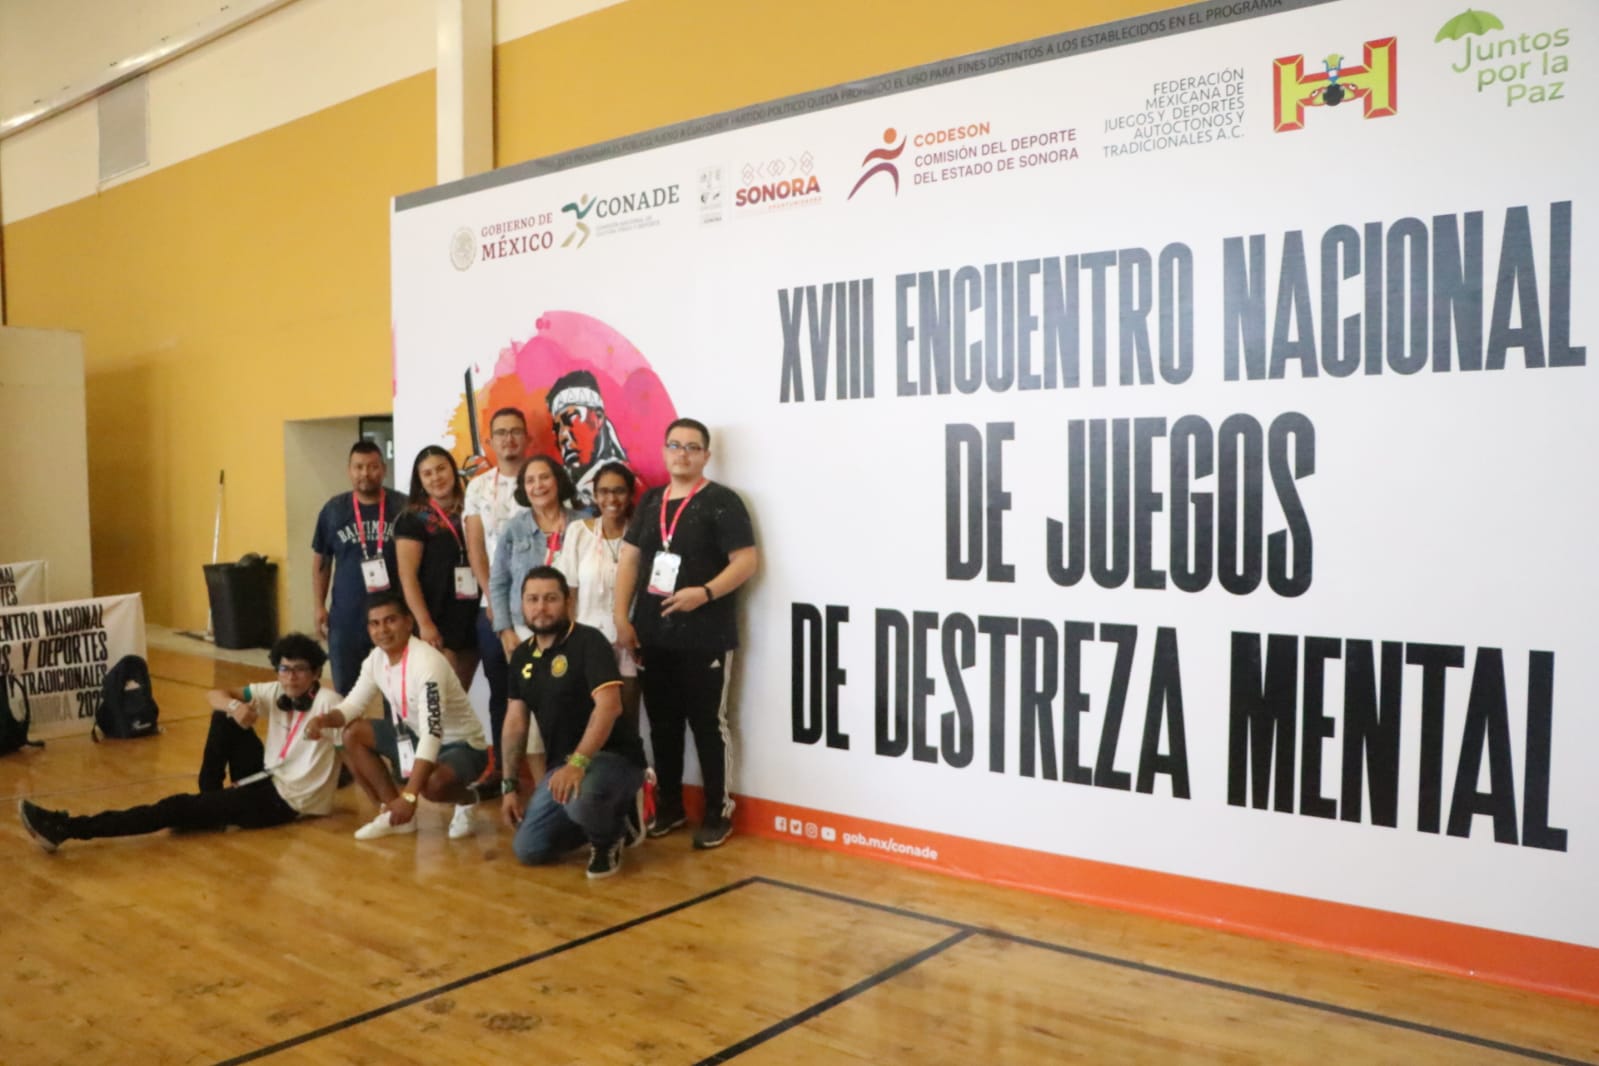 Avanzan 4 michoacanos a las finales del XXIII Encuentro Nacional de Juegos y Deportes Autóctonos y Tradicionales 2022